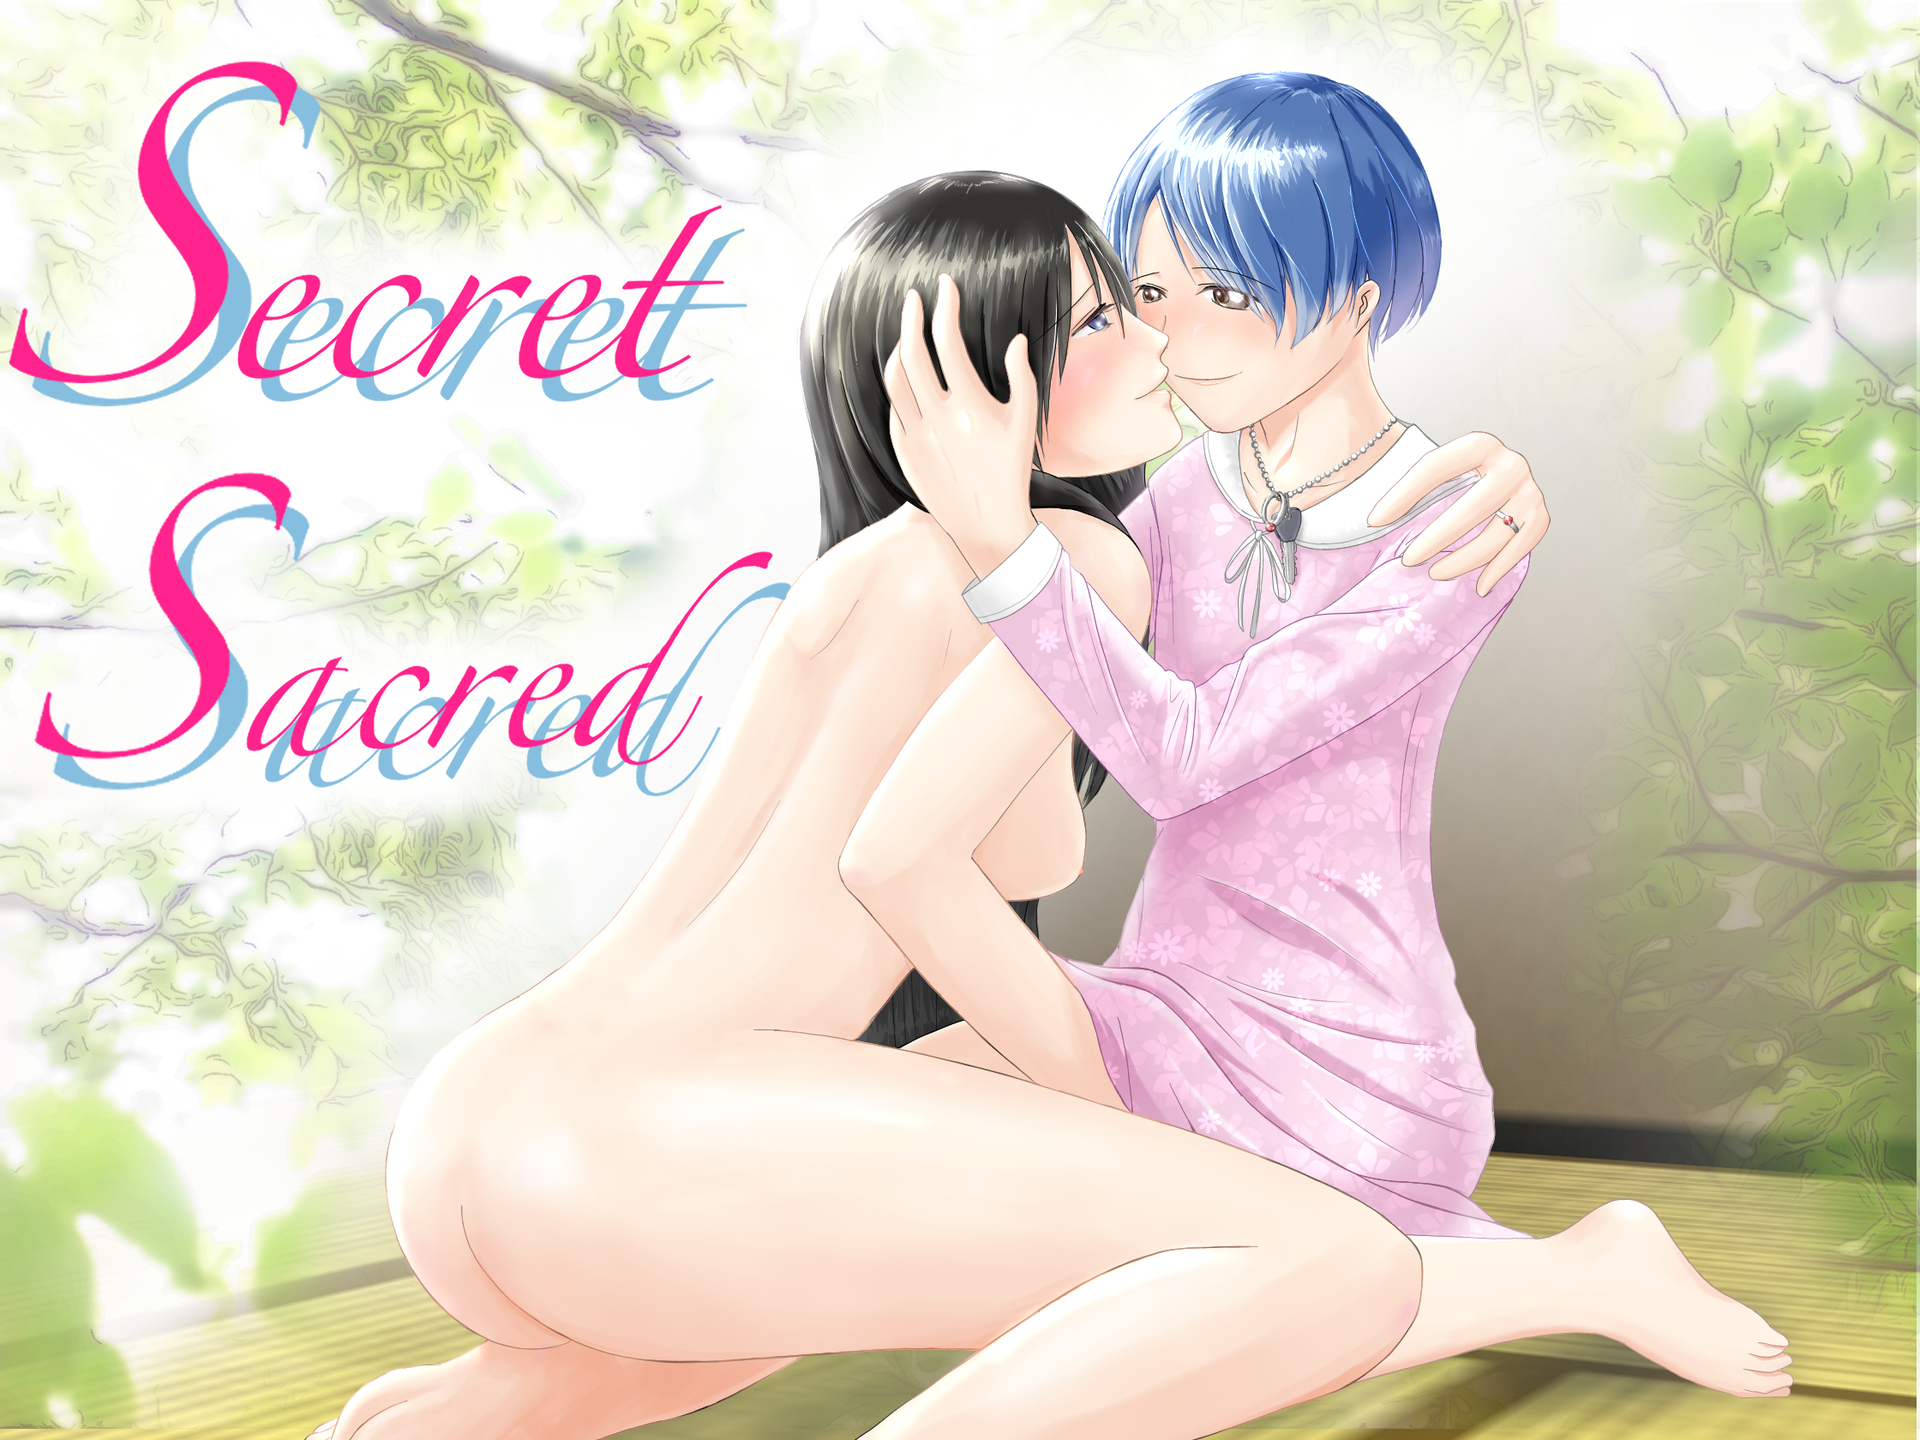 【ボイスドラマ】Secret Sacred【おねショタ×NTR】 公式サイト